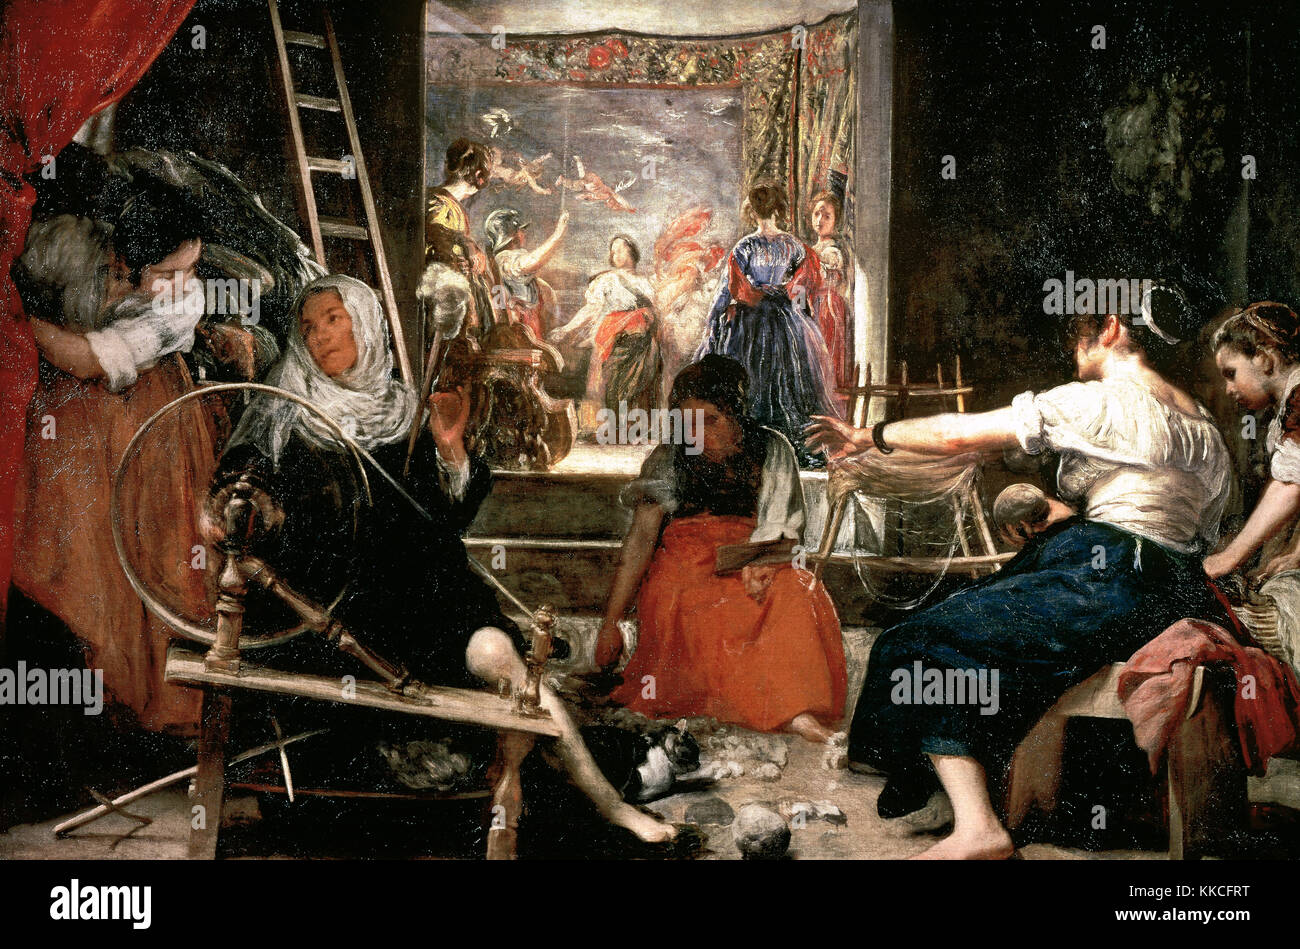 Diego Velazquez (1599-1660) peintre espagnol.. les tourniquets ou de la fable d'arachné, 1657. Musée du Prado madrid. L'Espagne.. Banque D'Images